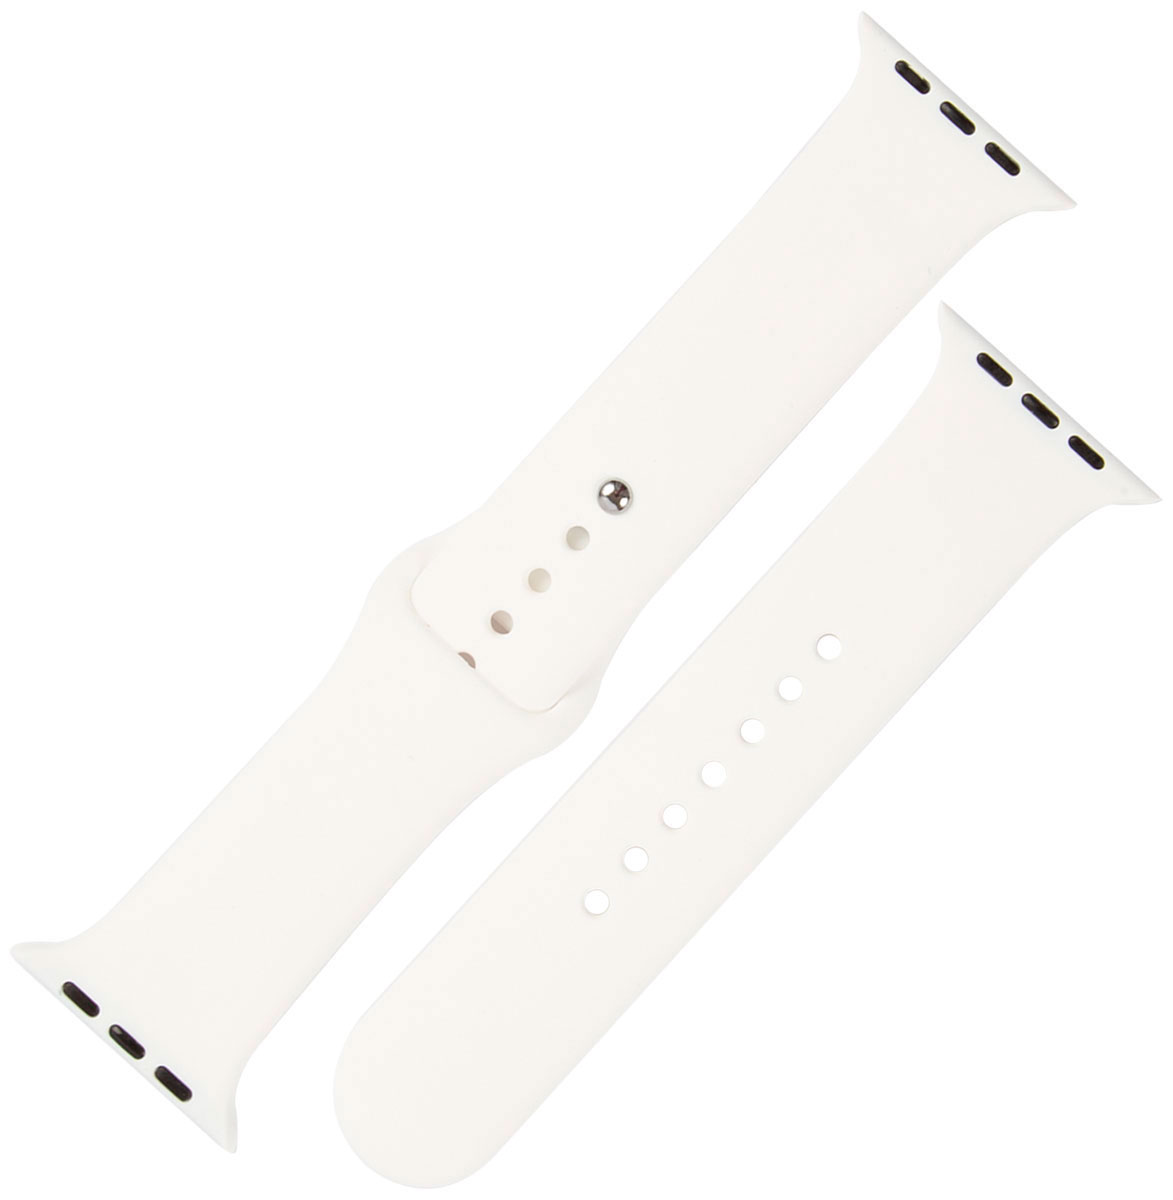 Ремешок силиконовый mObility для Apple watch - 38-40 мм (S3/S4/S5 SE/S6), белый litchi pattern leather case for samsung galaxy s3 s4 s5 s6 s7 edge s8 s9 s10 plus s10 lite s3 s3 s5 mini note 8 wallet flip case